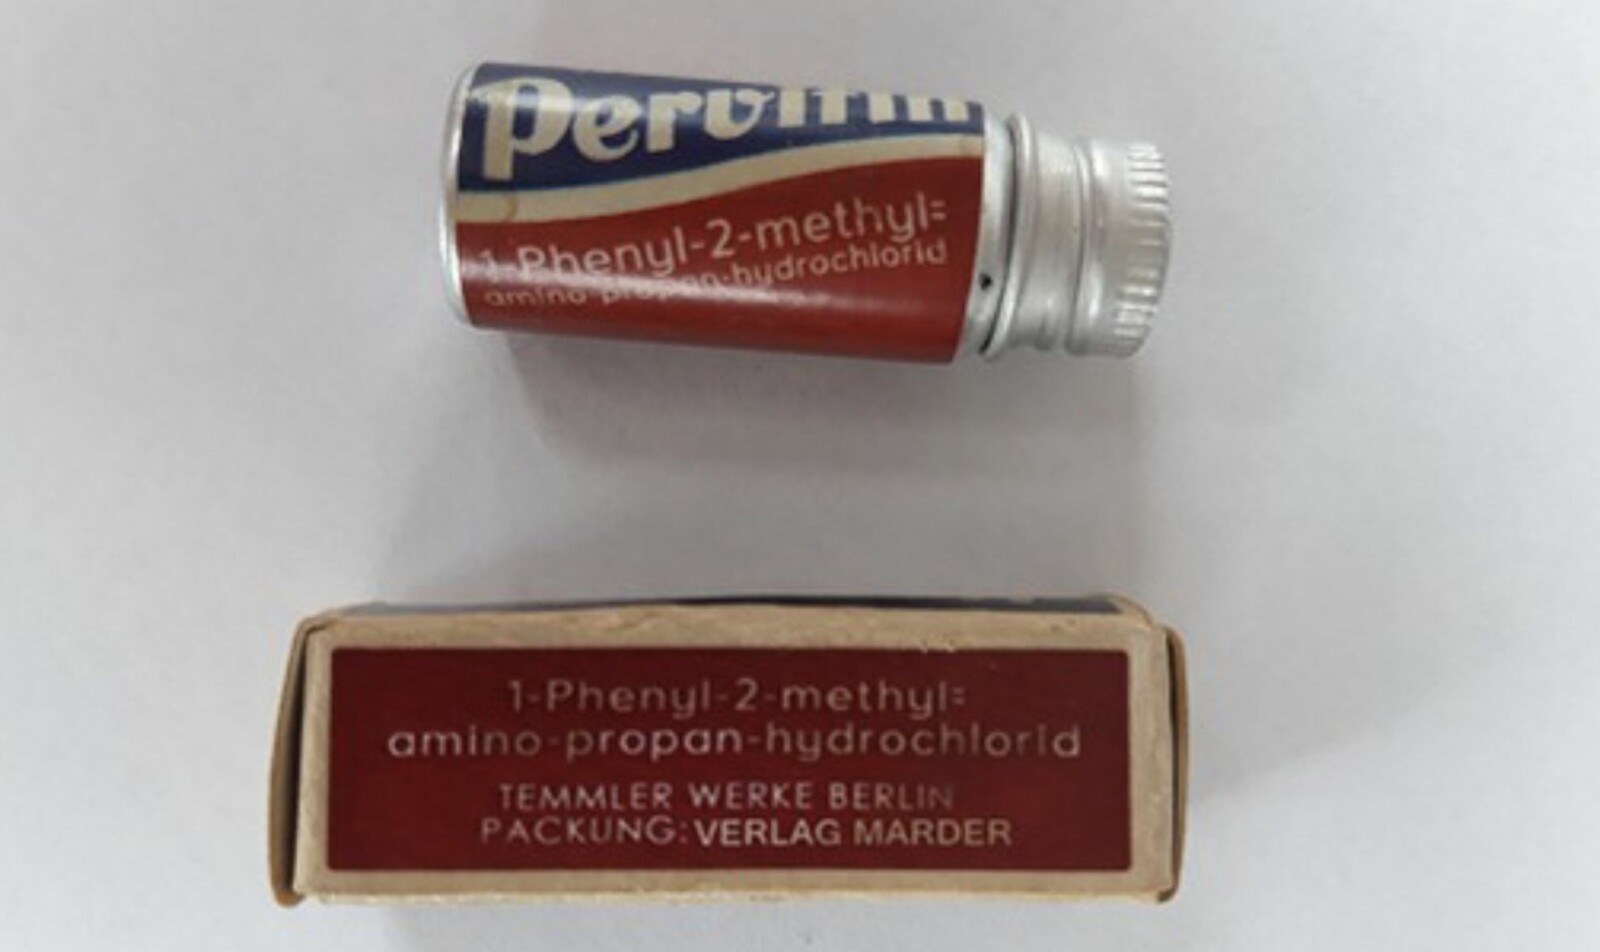 <b>NAZI-DOP:</b> Pervitin i flerfoldige millioner tabletter ble distribuert til tyske militære mannskaper. Før krigen gikk stoffet som «nazisme i pilleform».